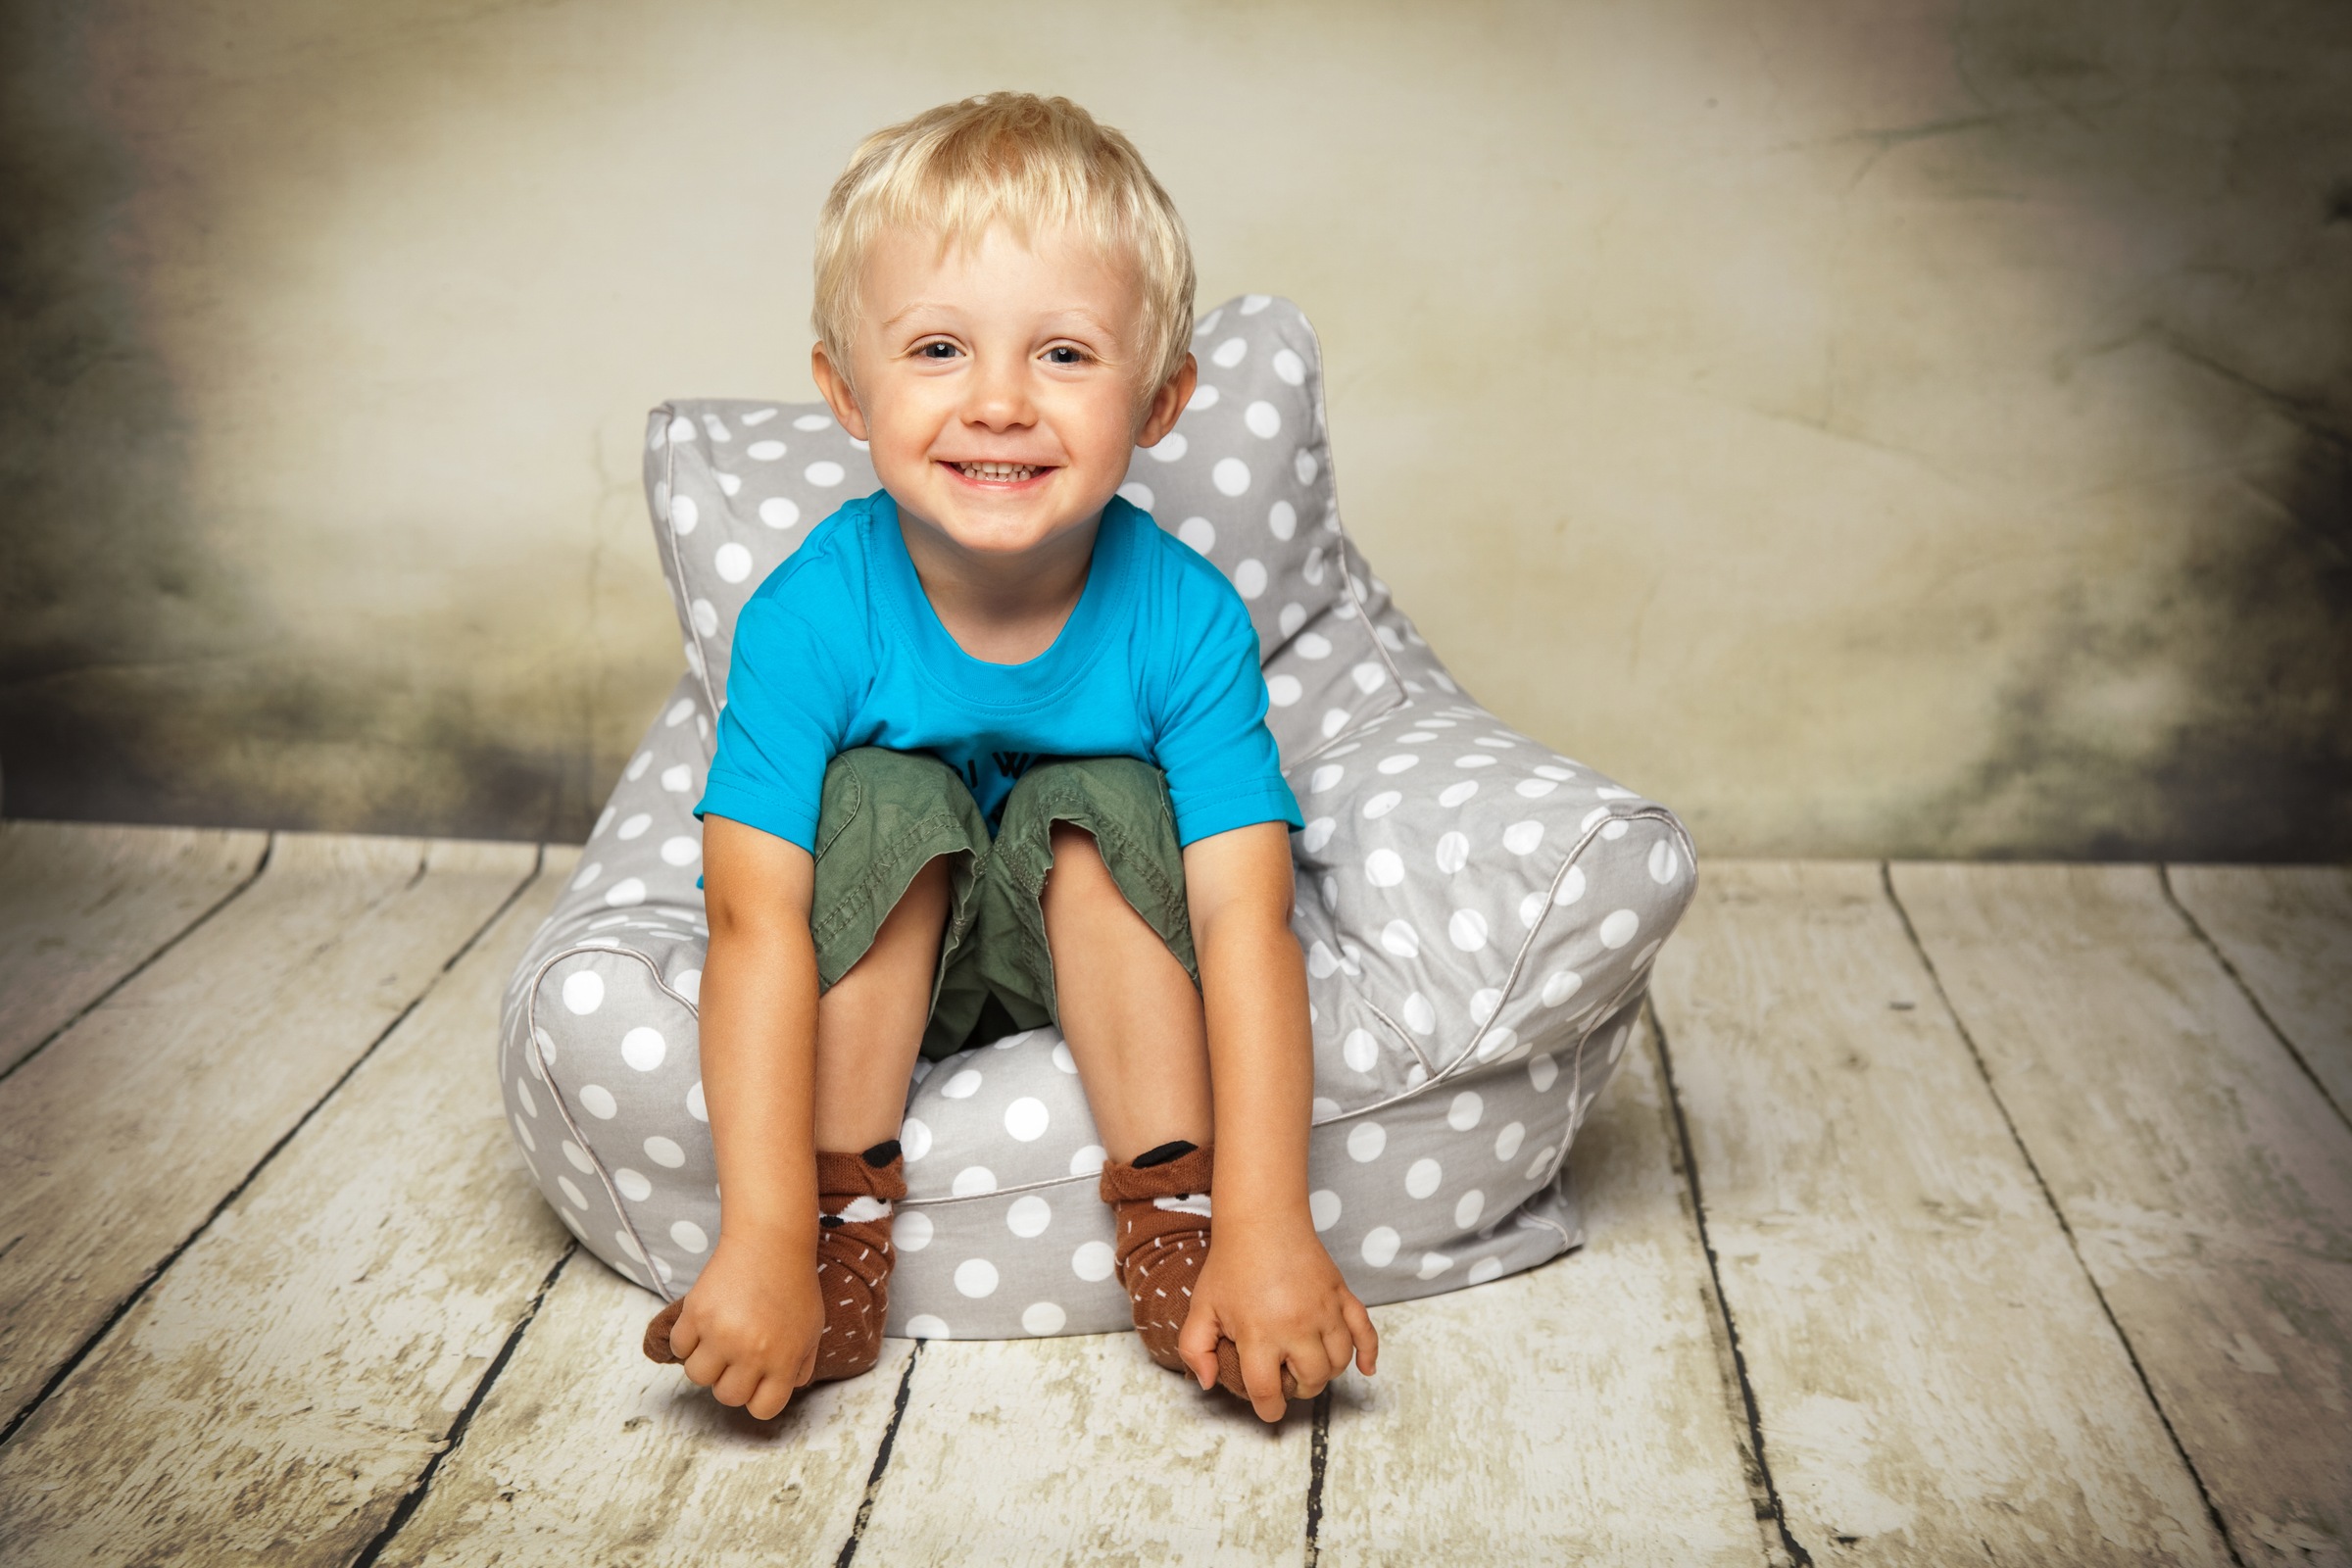 Knorrtoys® Sitzsack »Dots, Grey«, für Kinder; Made in Europe online kaufen